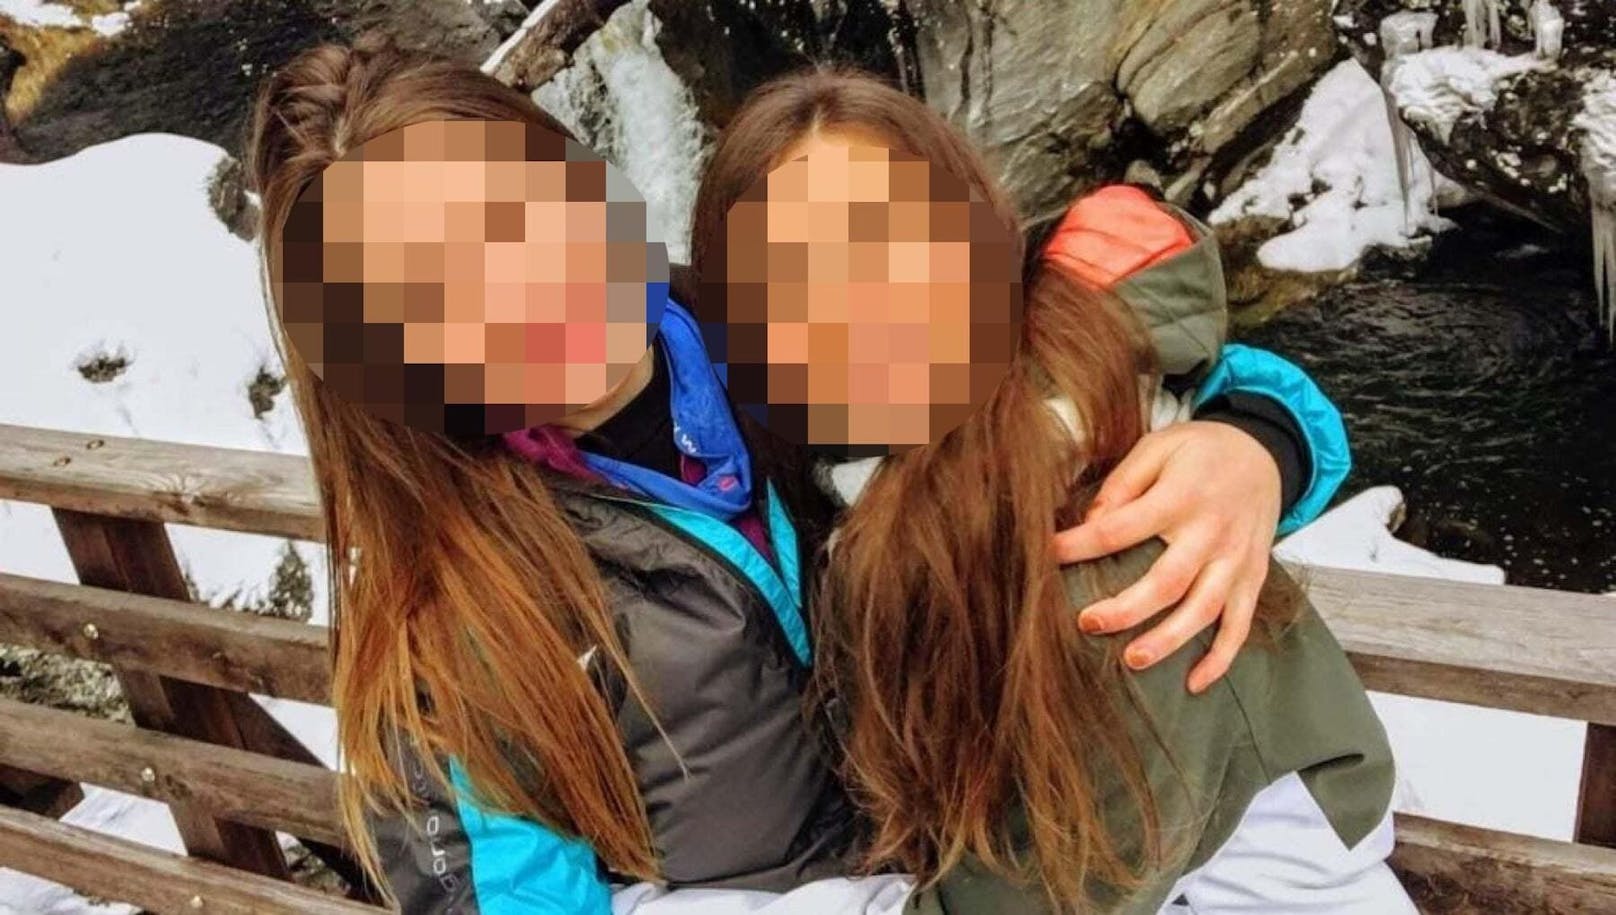 Martina Svilpo und Paola Viscardi starben im Hochgebirge an Unterkühlung.